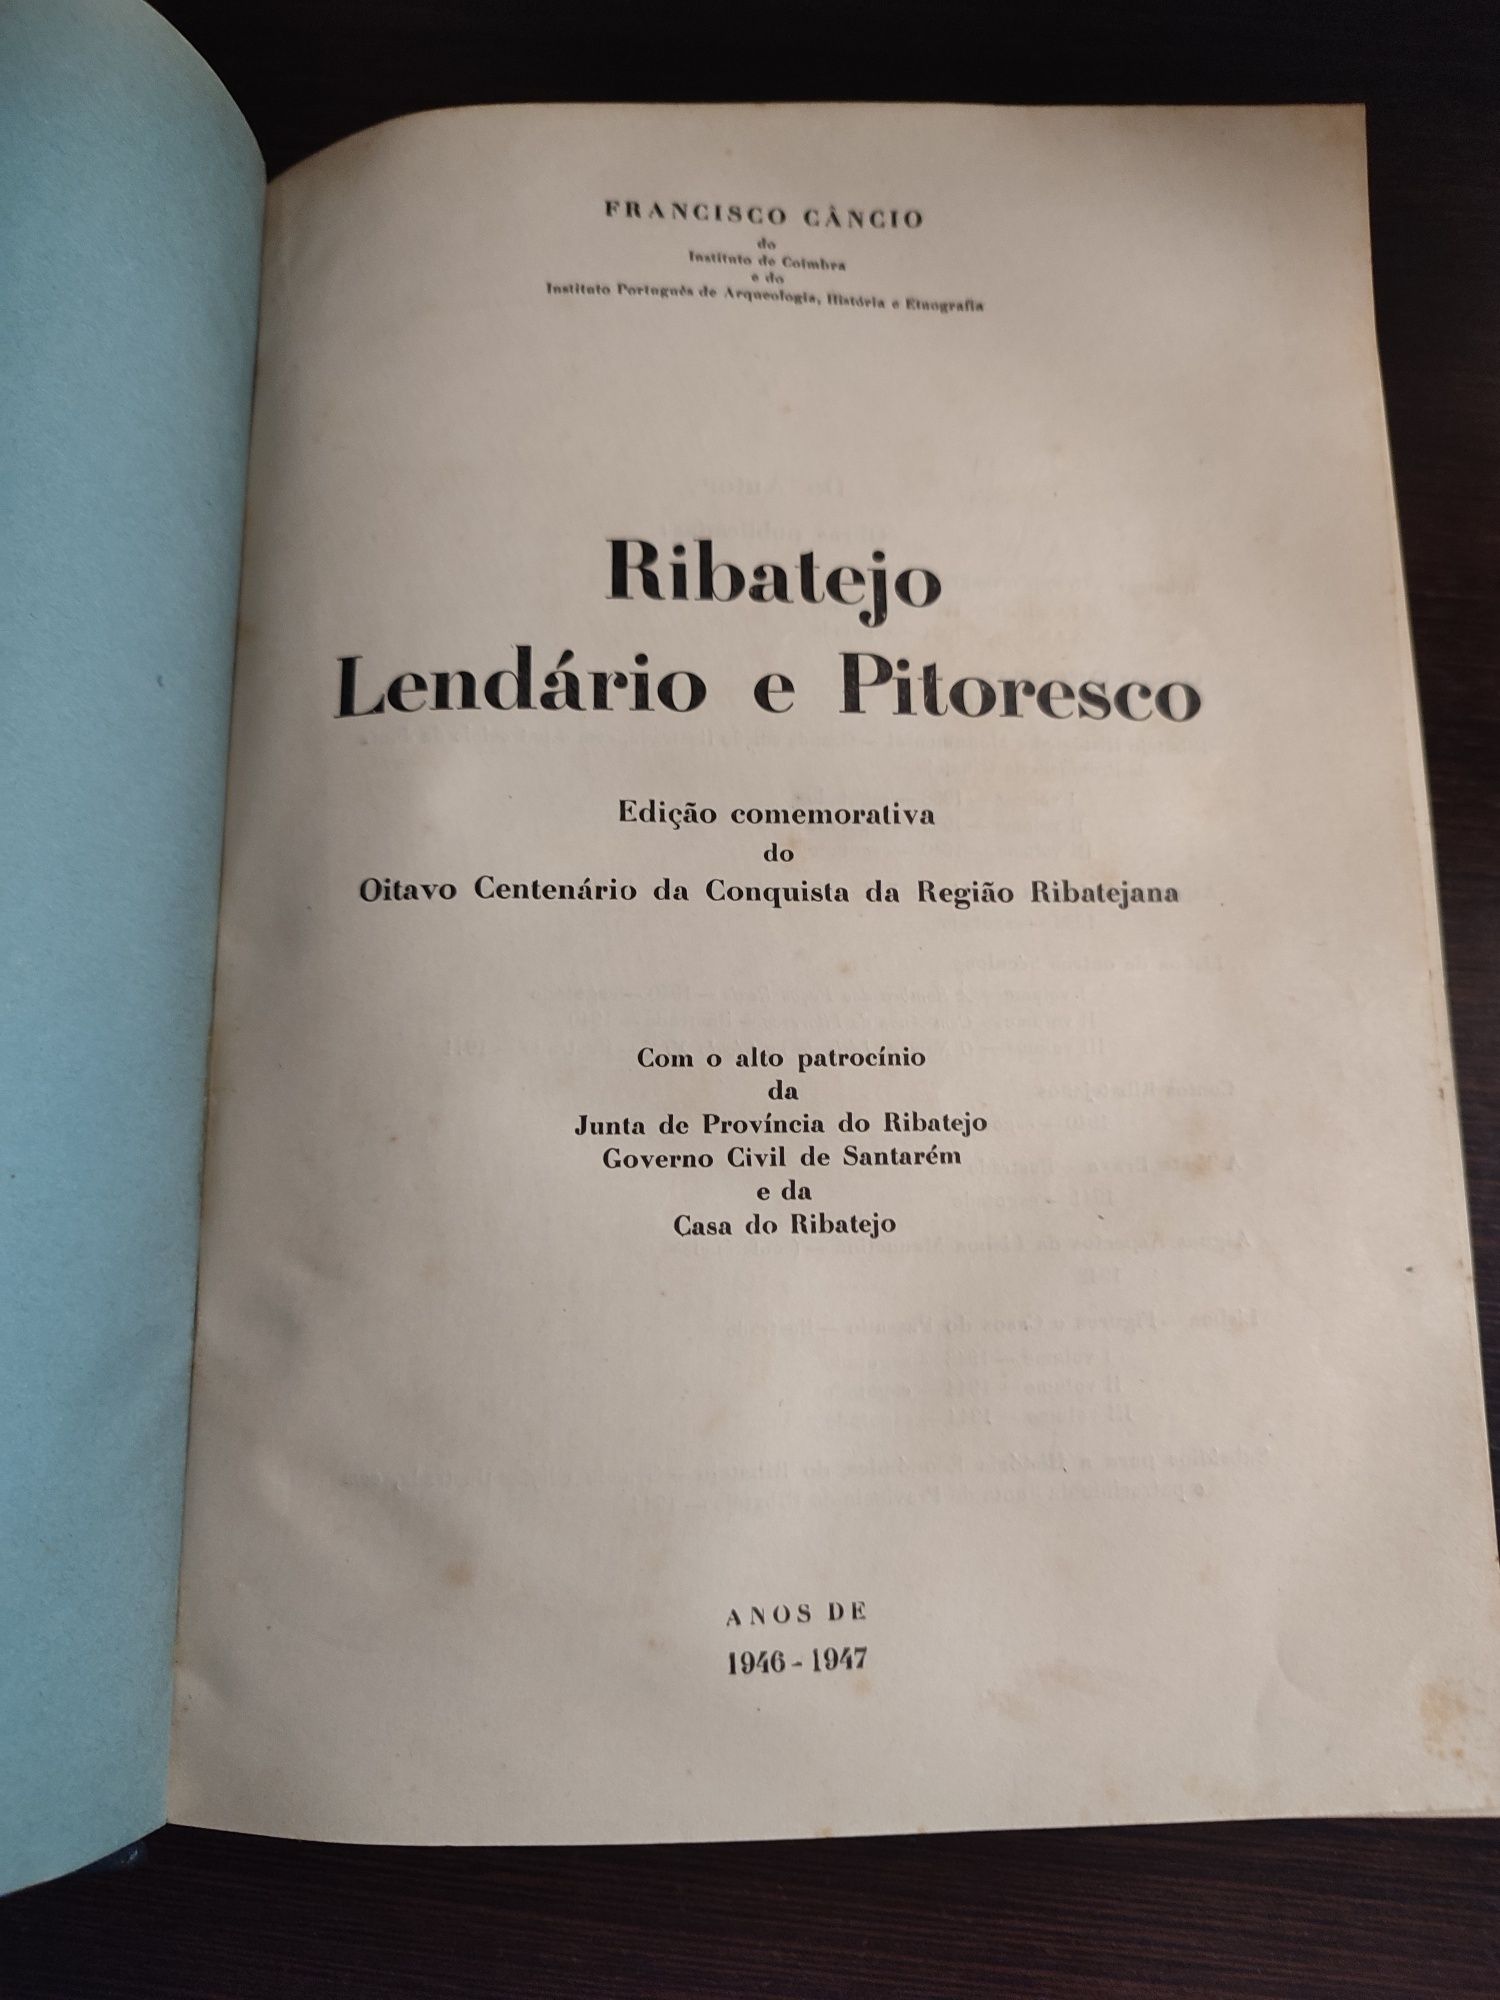 Livros Antigos de Francisco Câncio